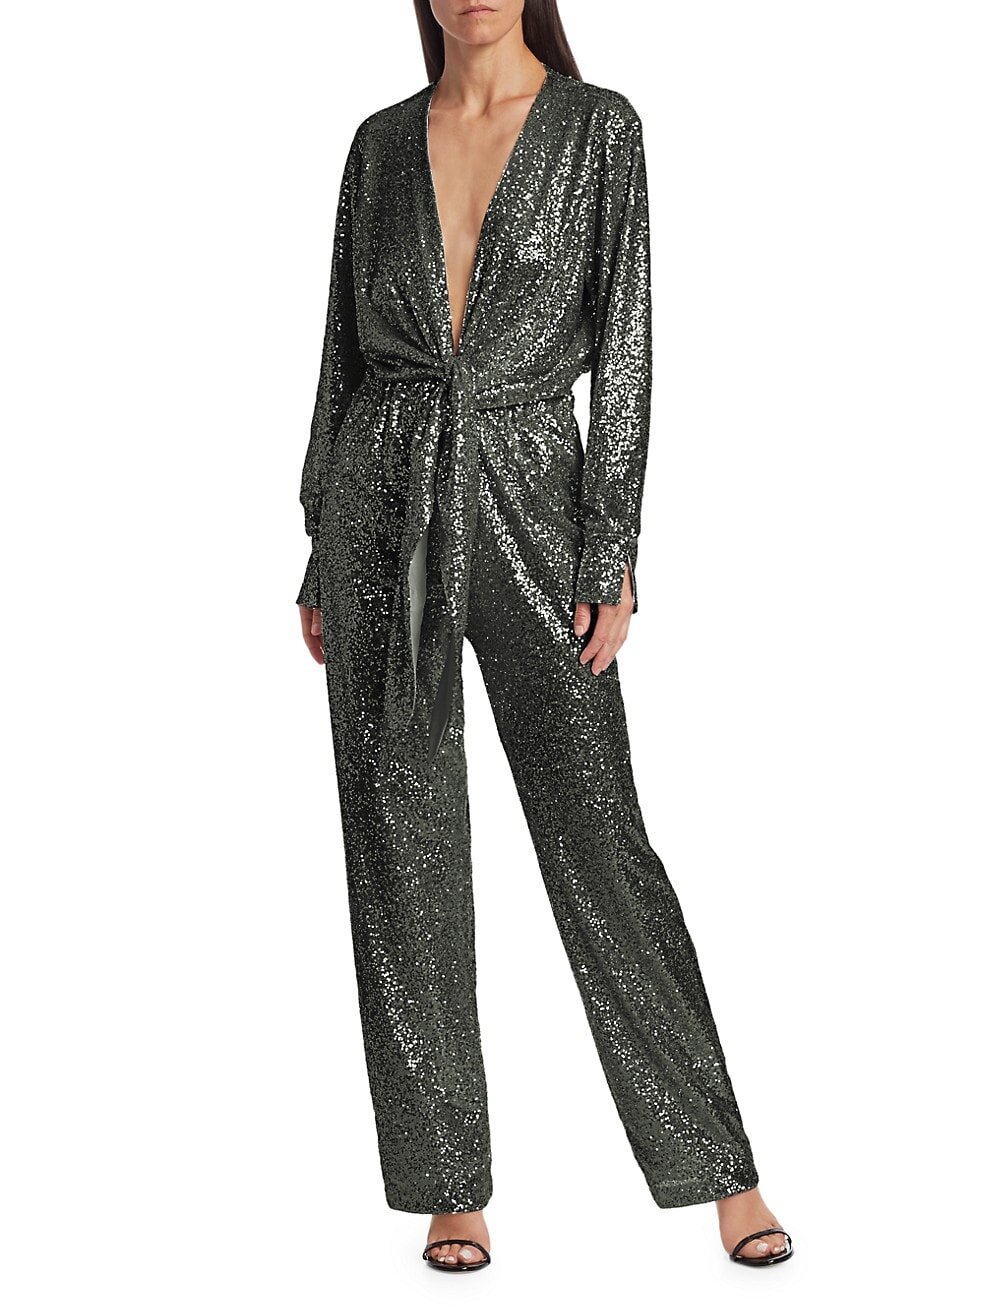 $699.99 Carolina Ritzler Tie-Front Sequin Jumpsuit